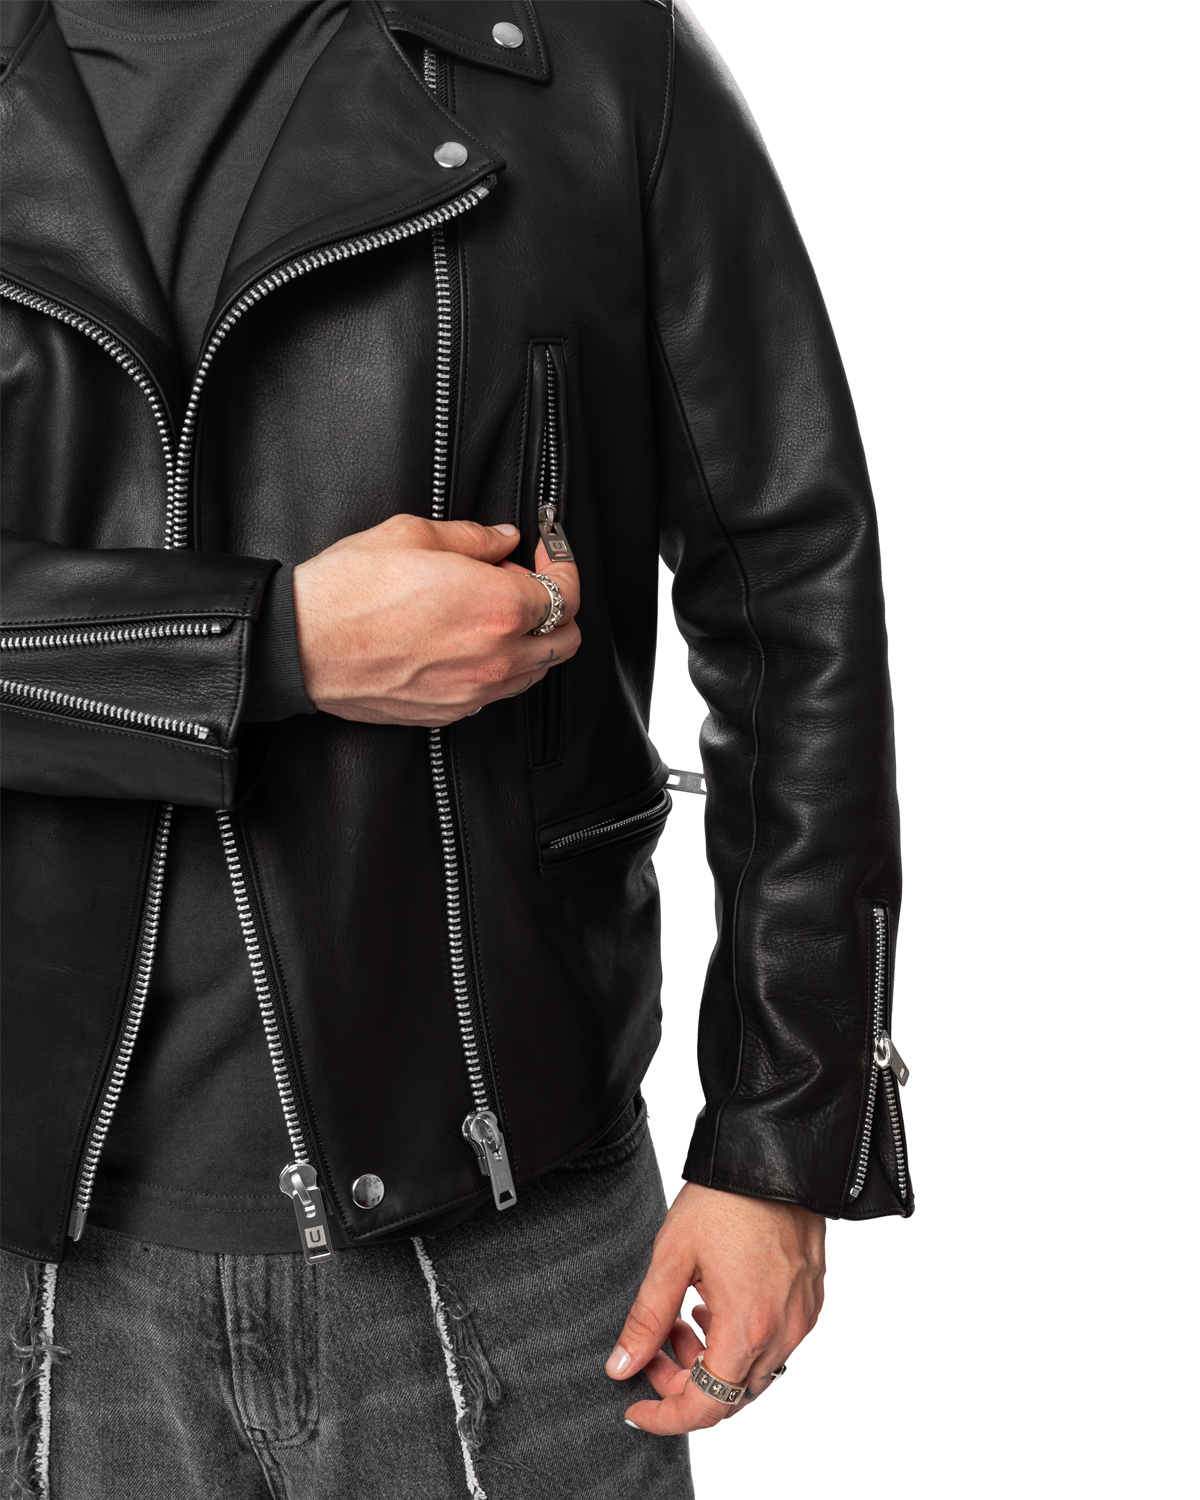 UNDERCOVER UC2C9204 Jacket Biker Leather – Black LIKELIHOOD